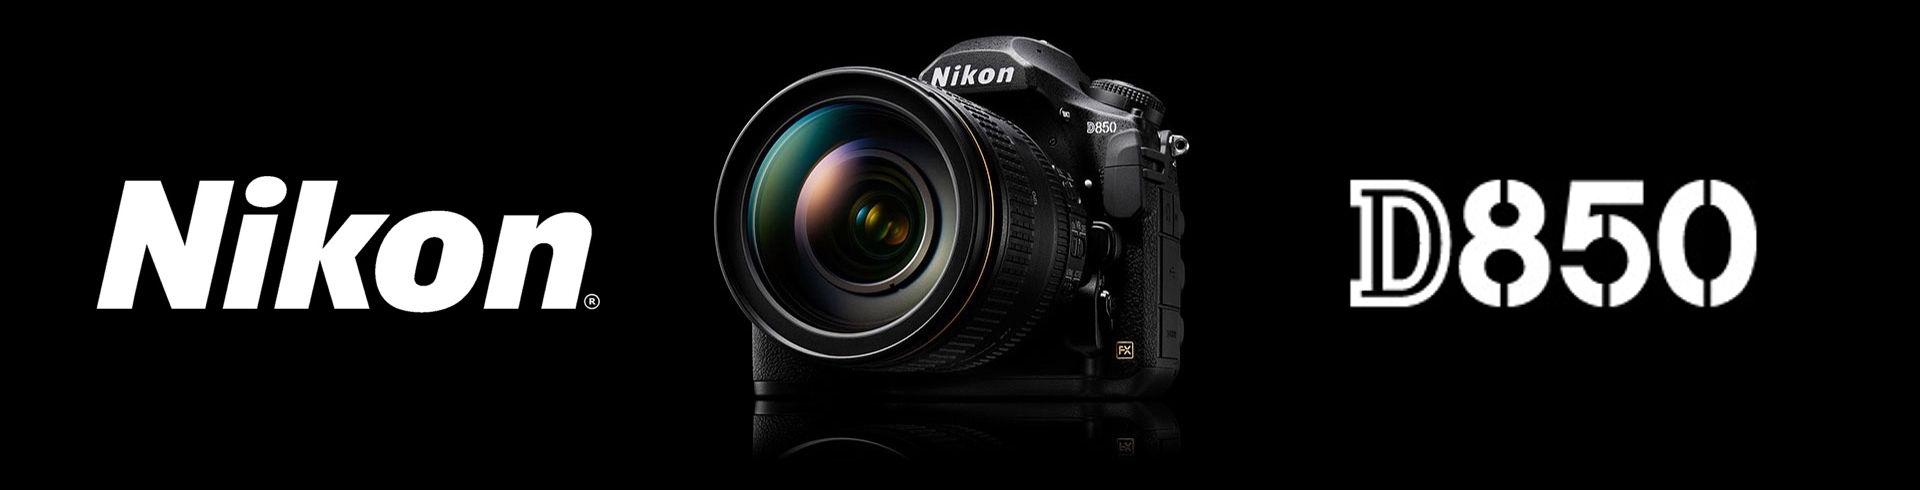 Immagini campione Nikon D850